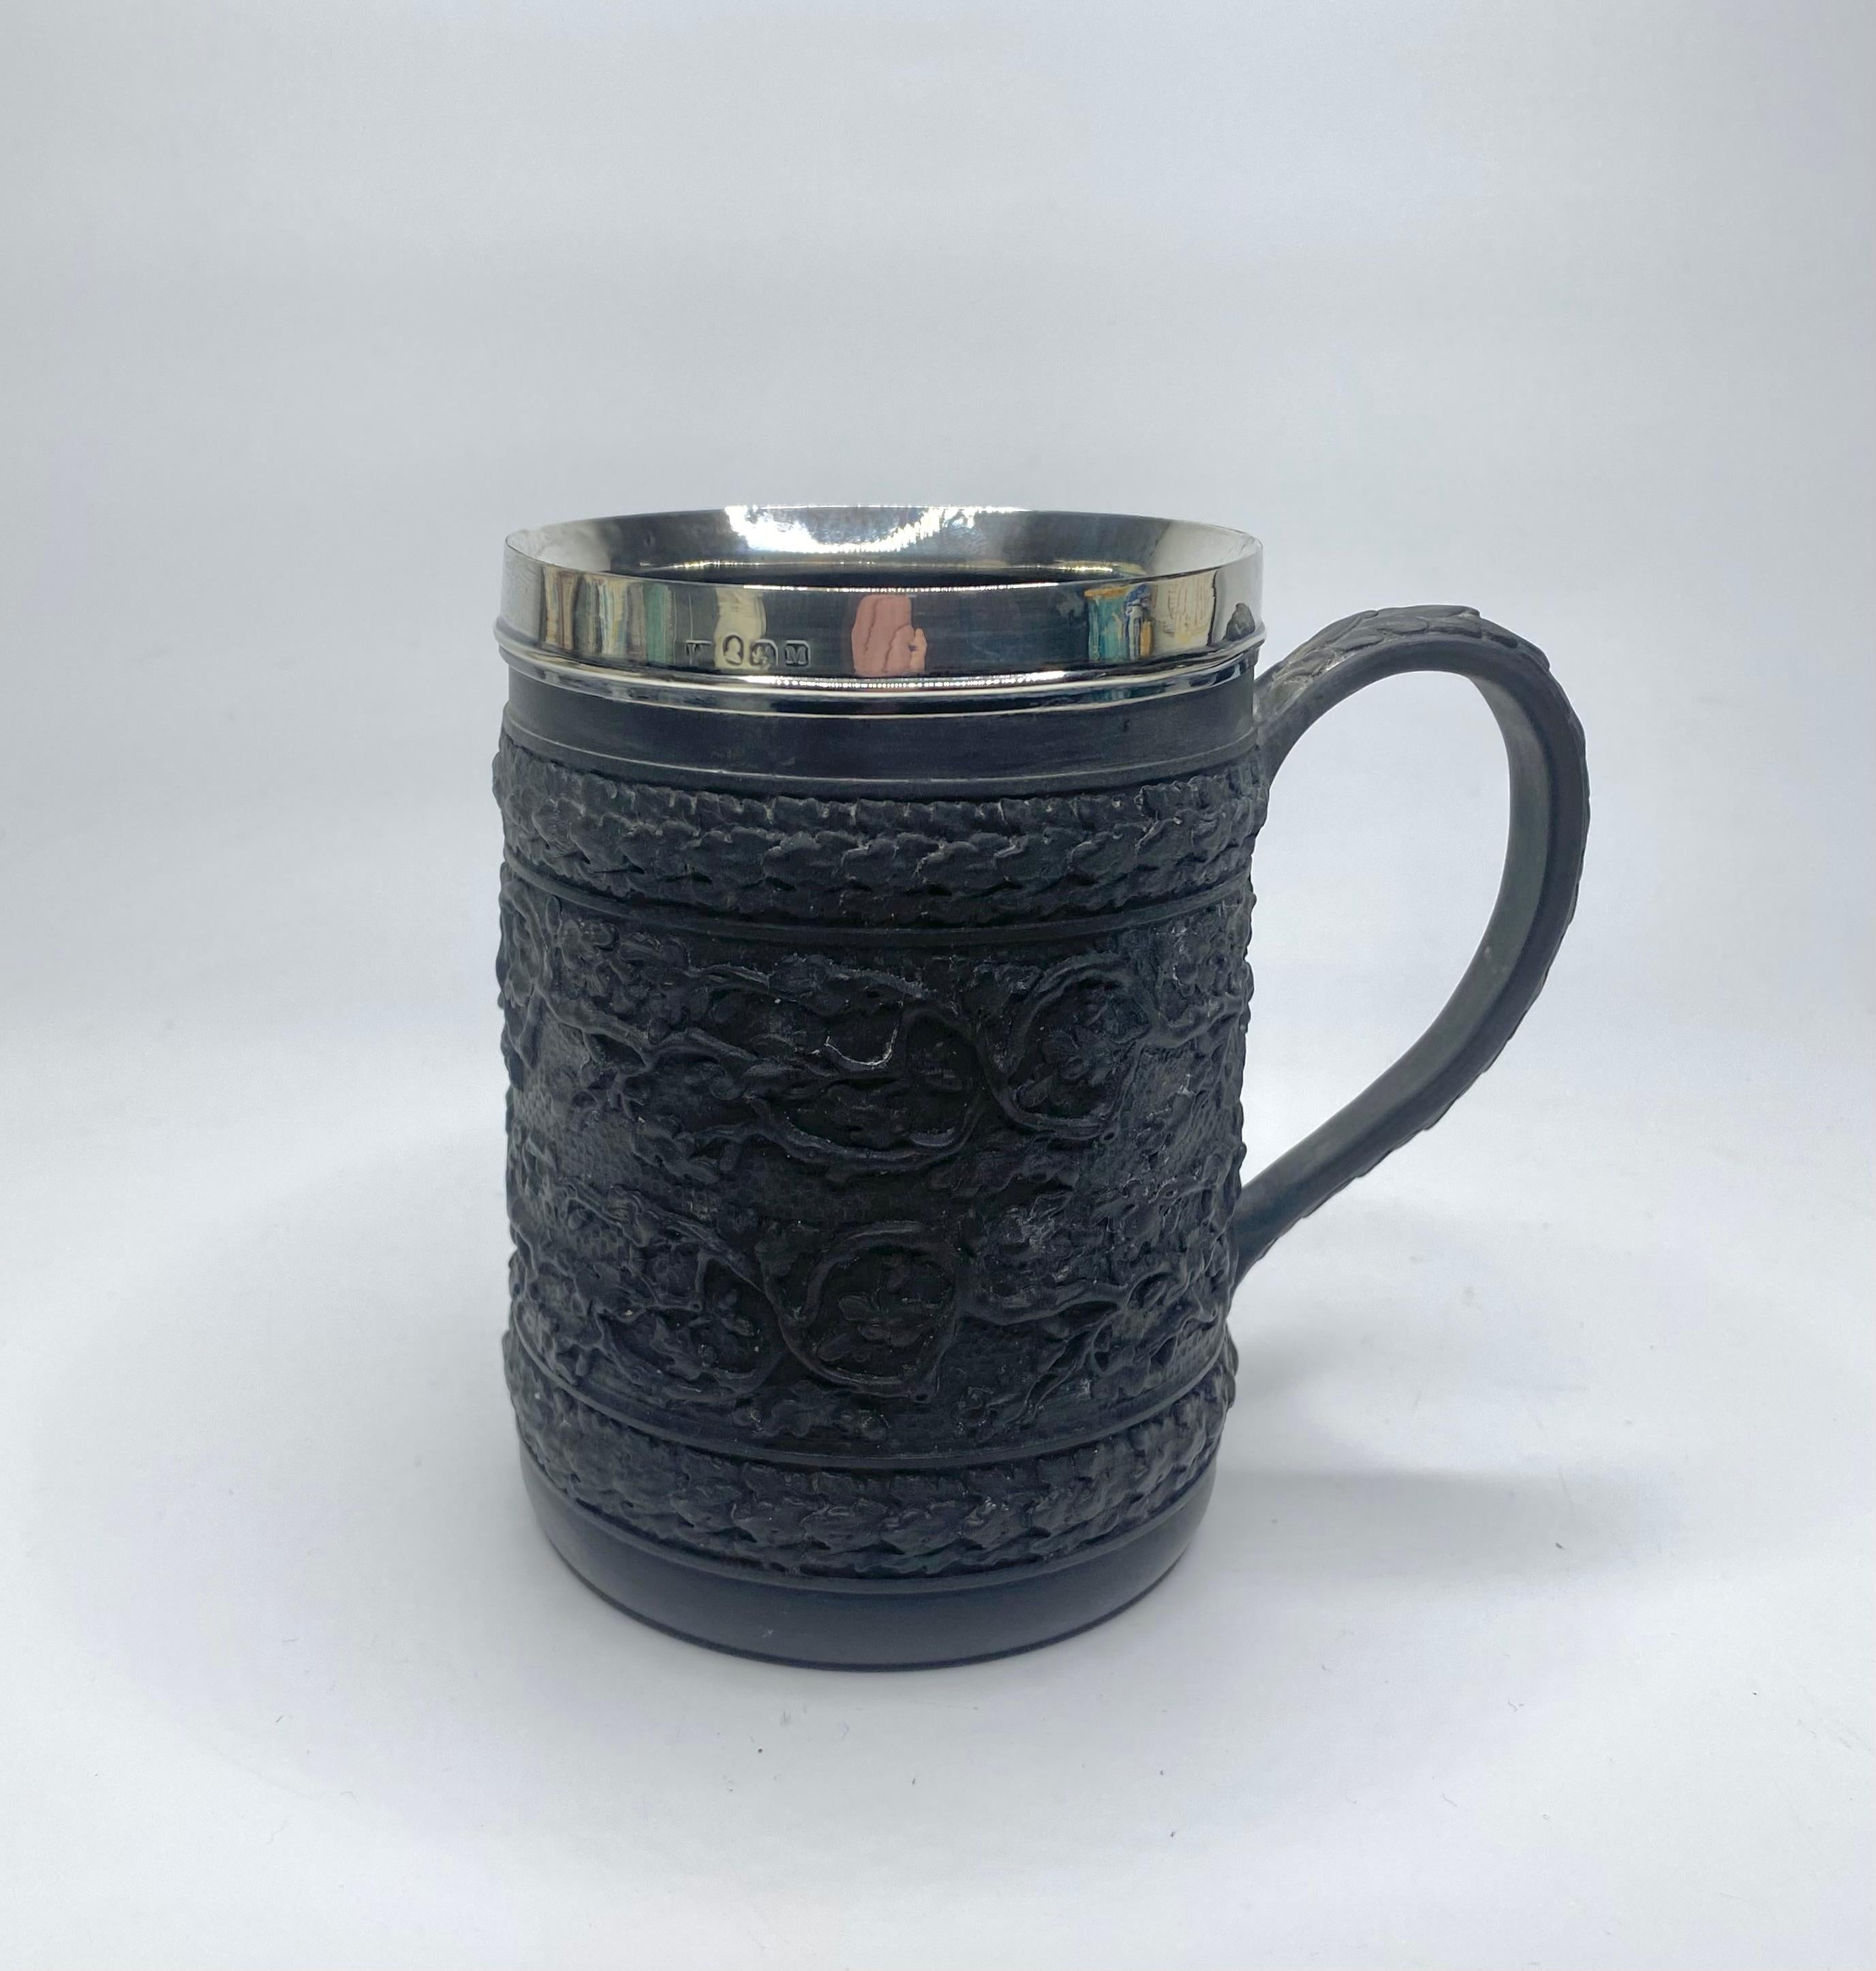 Georgian Wedgwood black basalt mug, silver mounted, 1808.